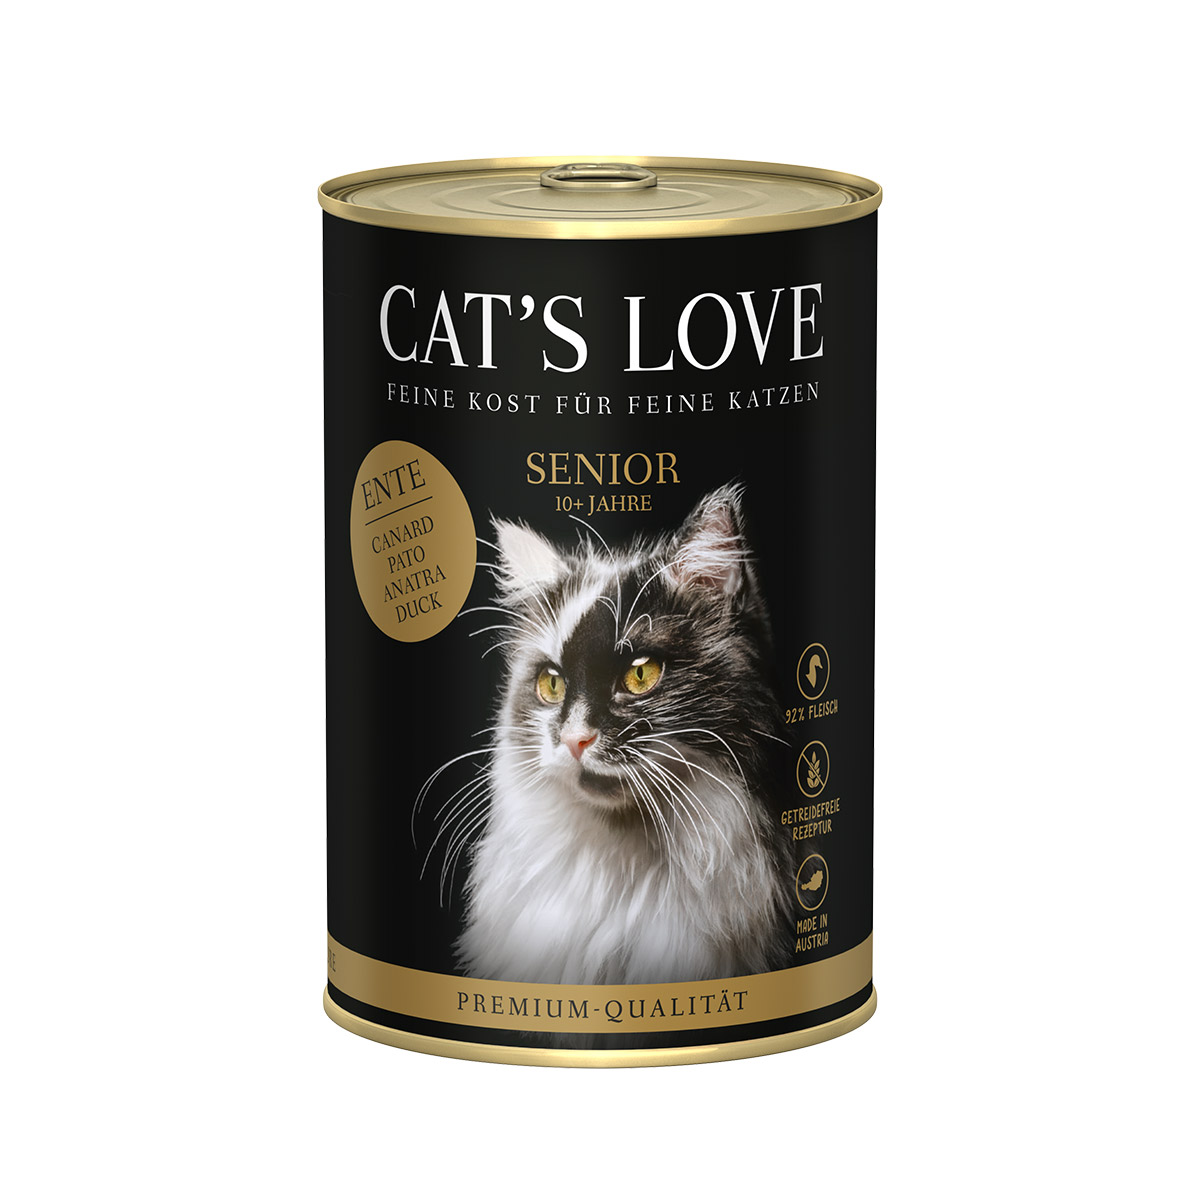 Cat´s Love Senior Ente 6x400g von Cat's Love